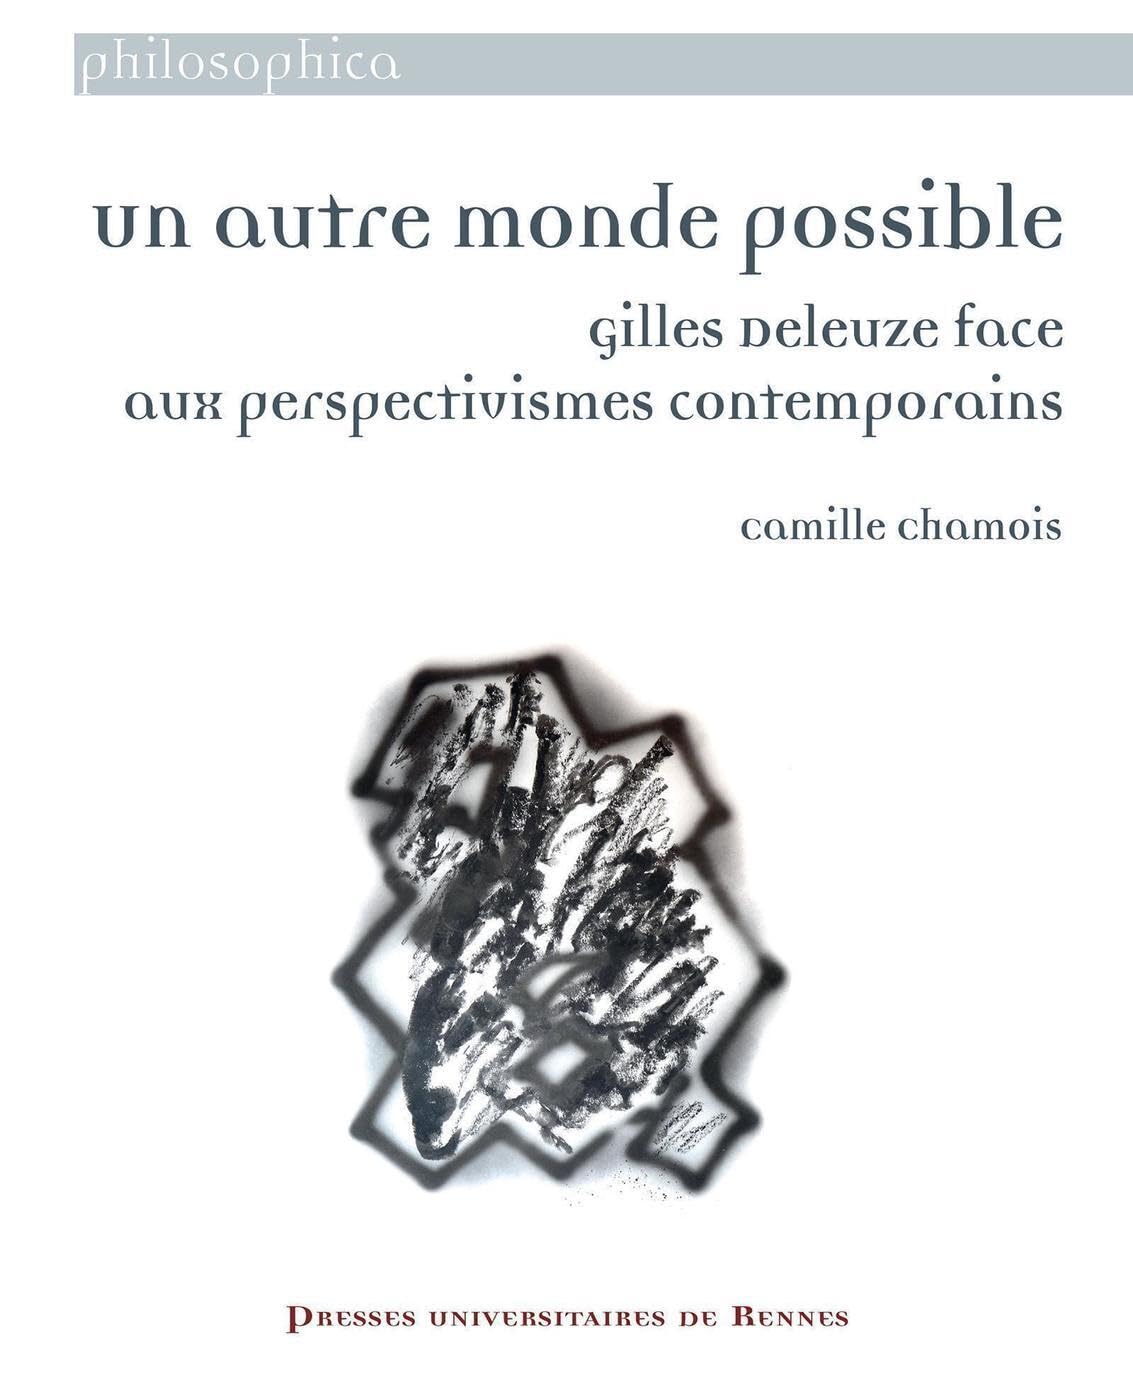 You are currently viewing Un autre monde possible : Gilles Deleuze face aux perspectivismes contemporains